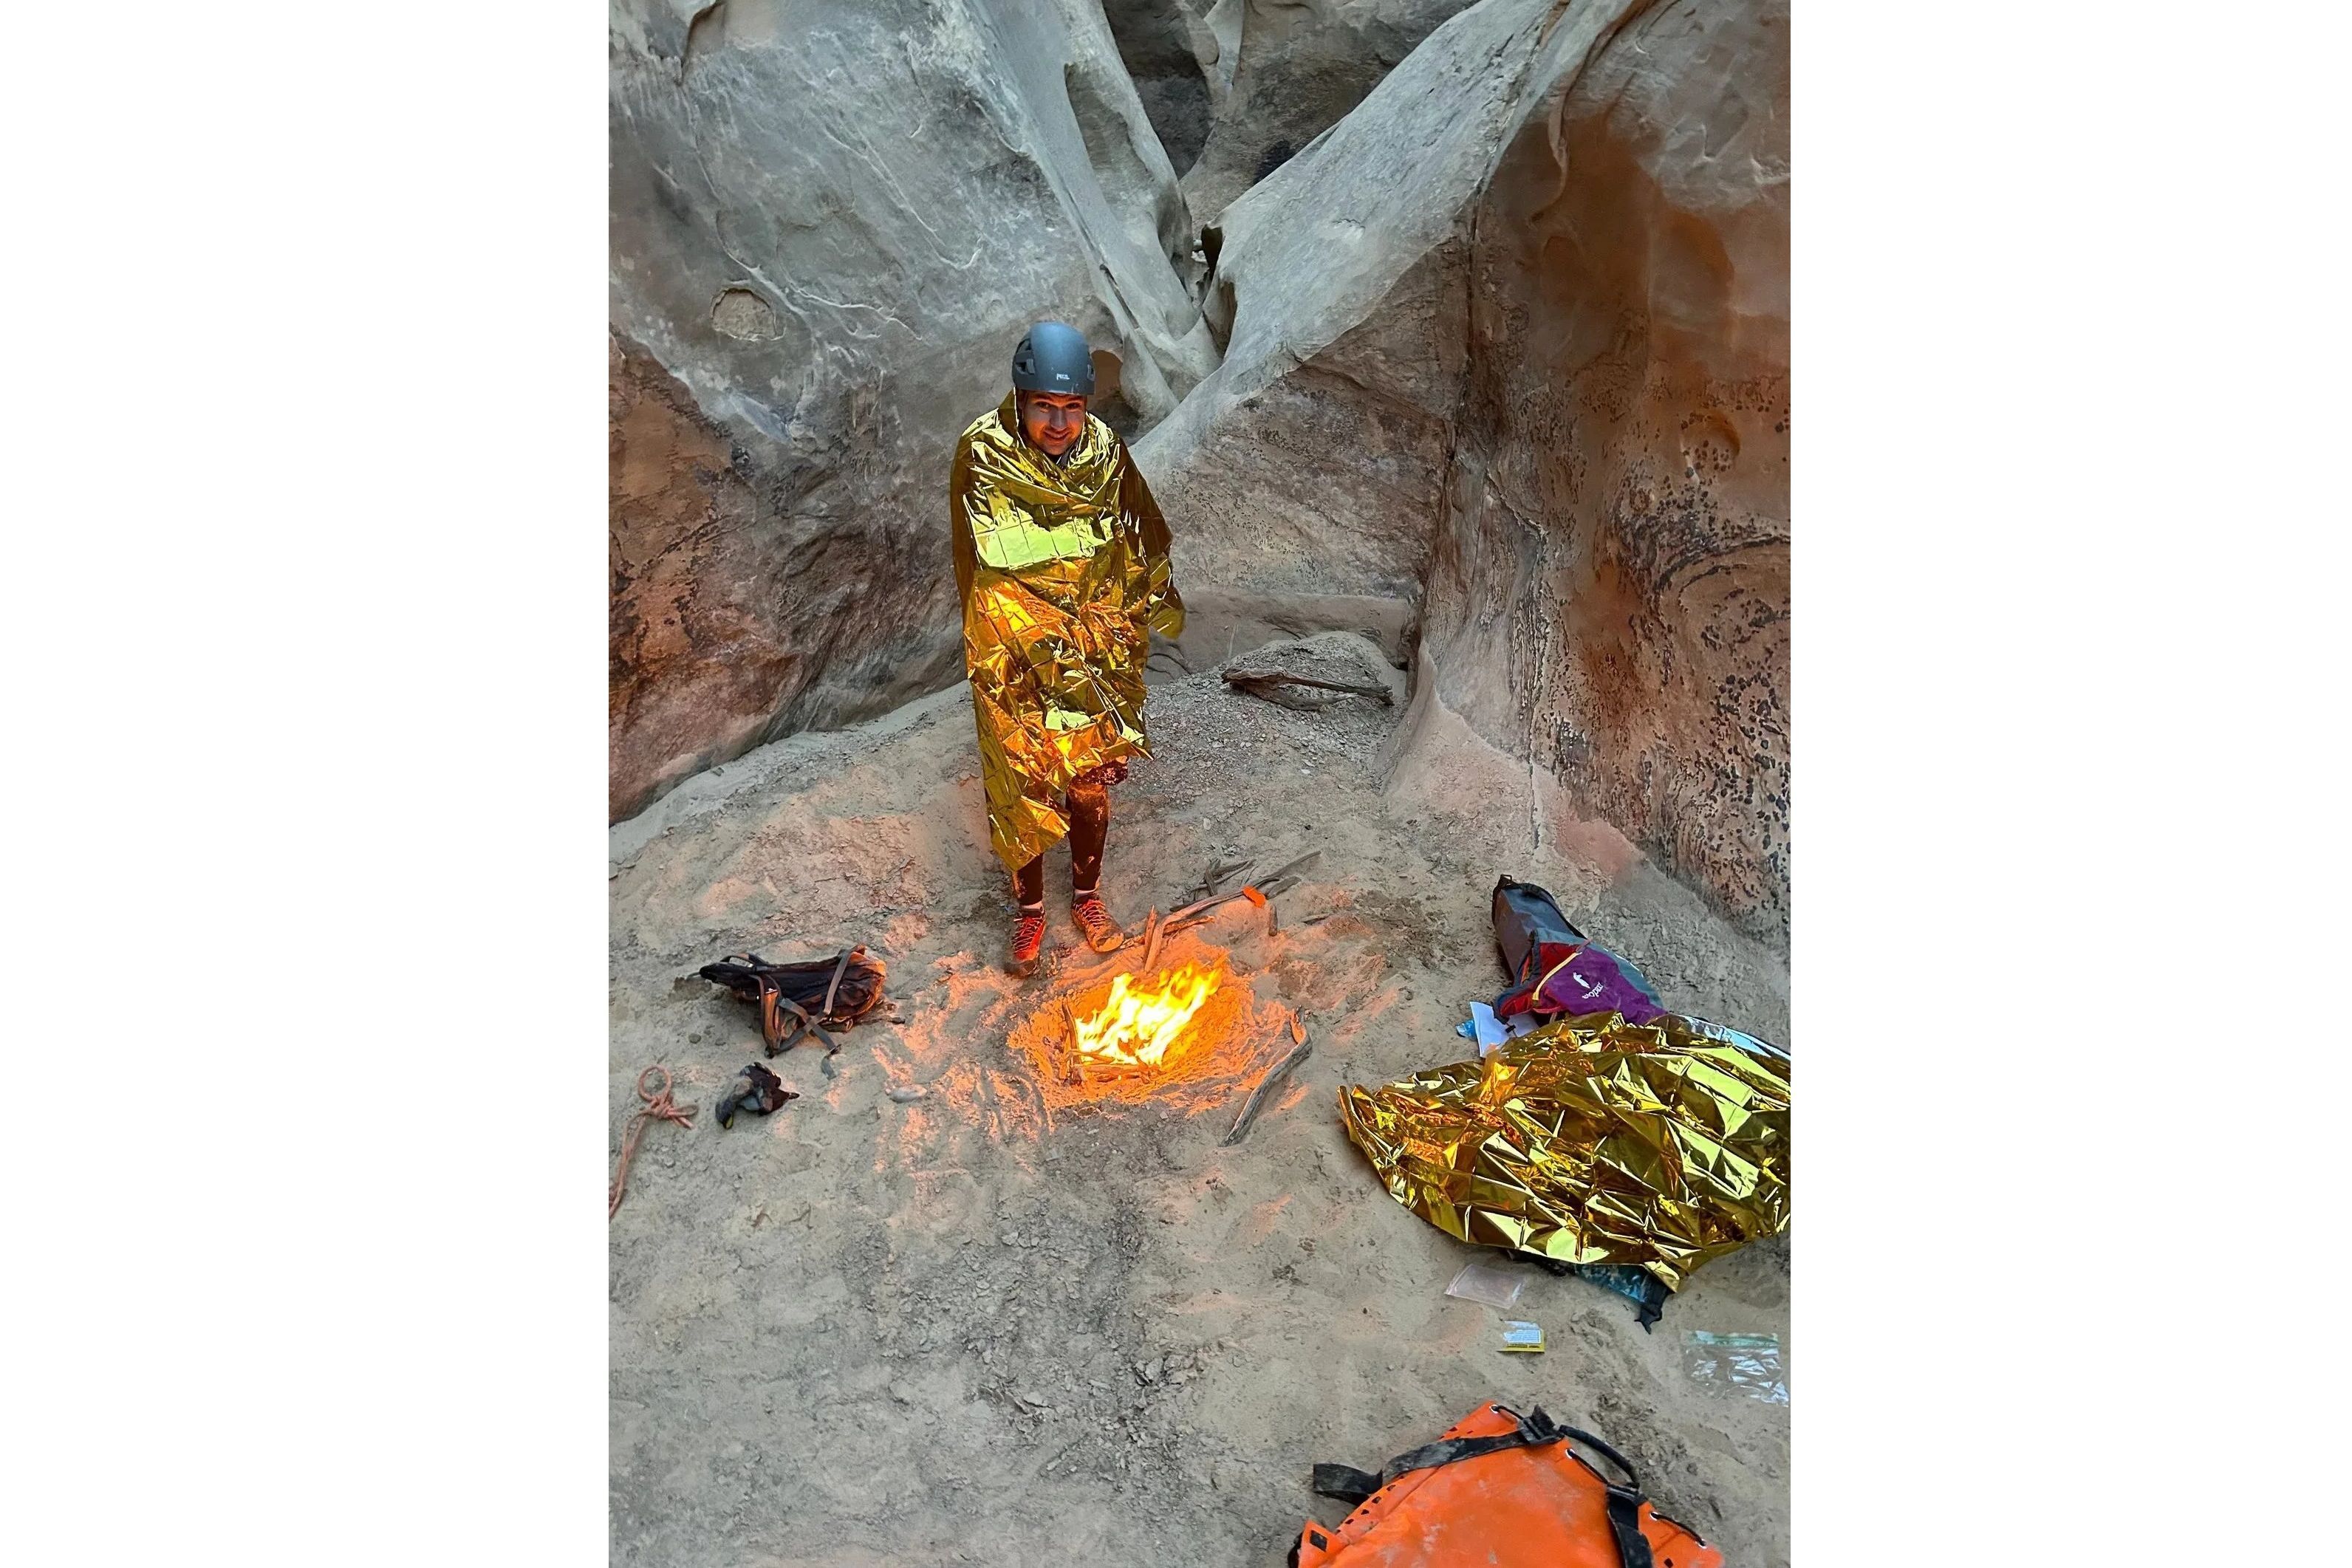 Image reproduite avec l'aimable autorisation de KUTV - L'iPhone 14 sauve trois étudiants de la mort gelée dans un canyon de l'Utah